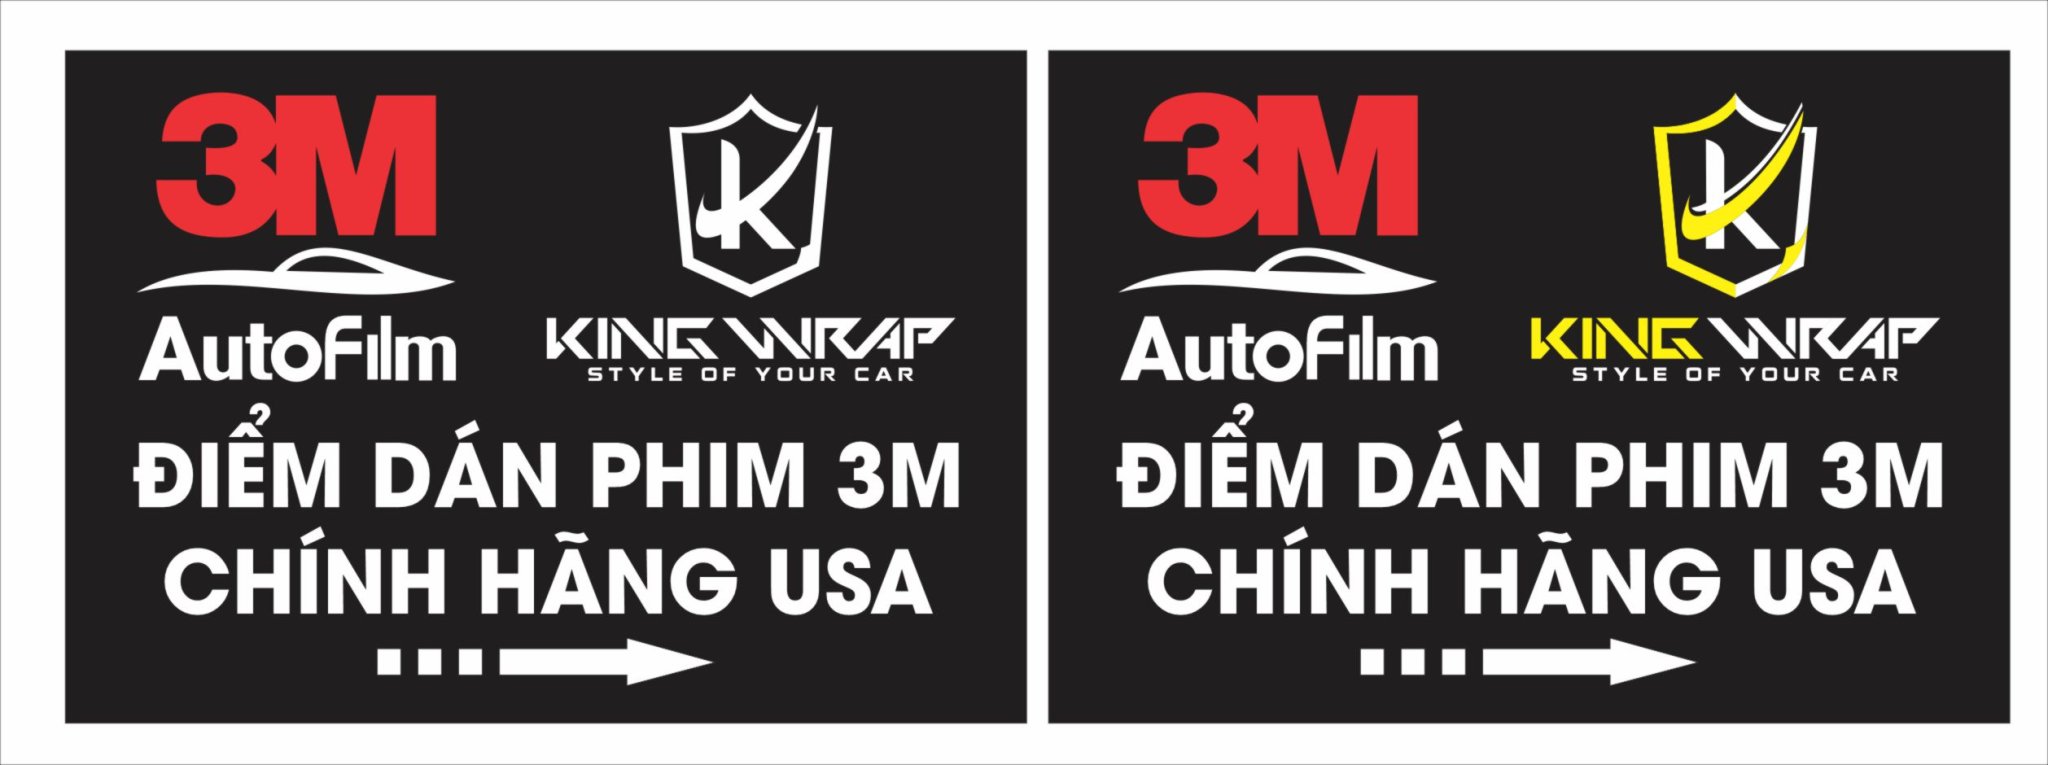 Kingwrap địa chỉ dán phim cách nhiệt 3M chính hãng Hà Nội